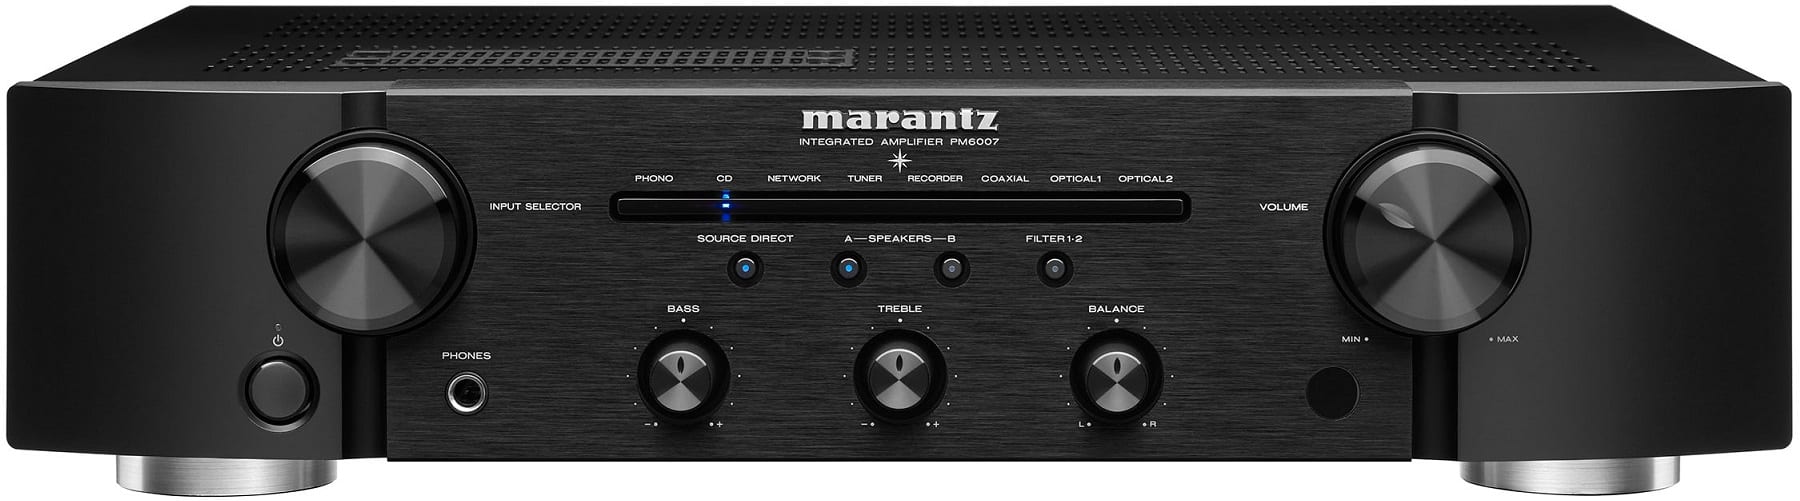 Marantz PM6007 zwart